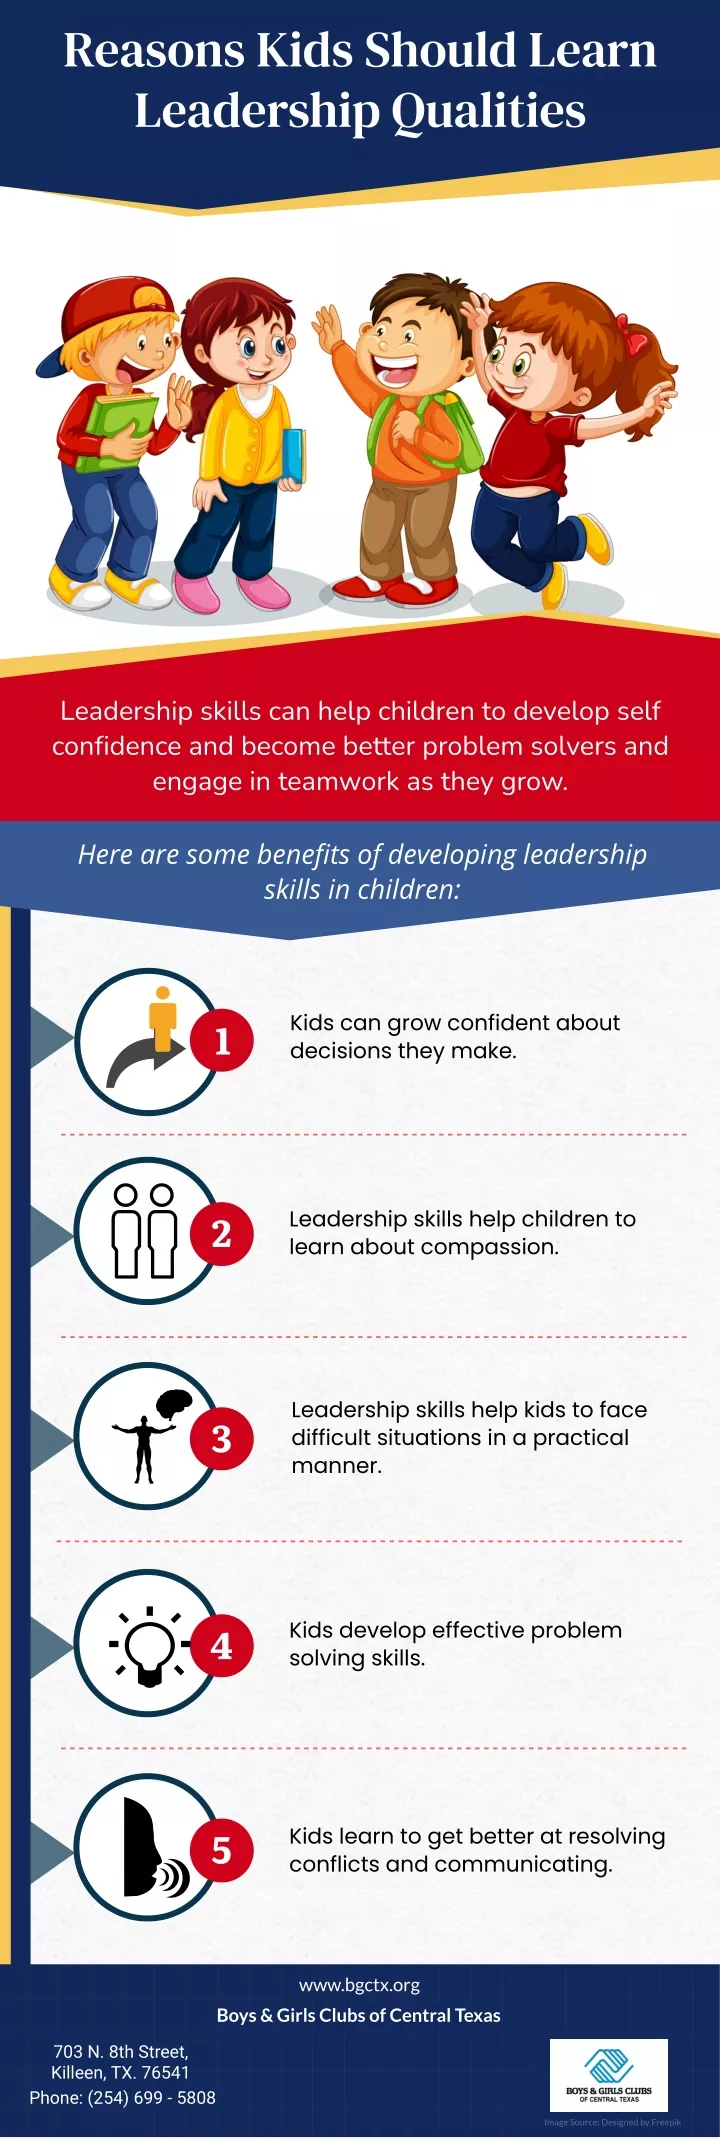 reasons kids should learn leadership qualities